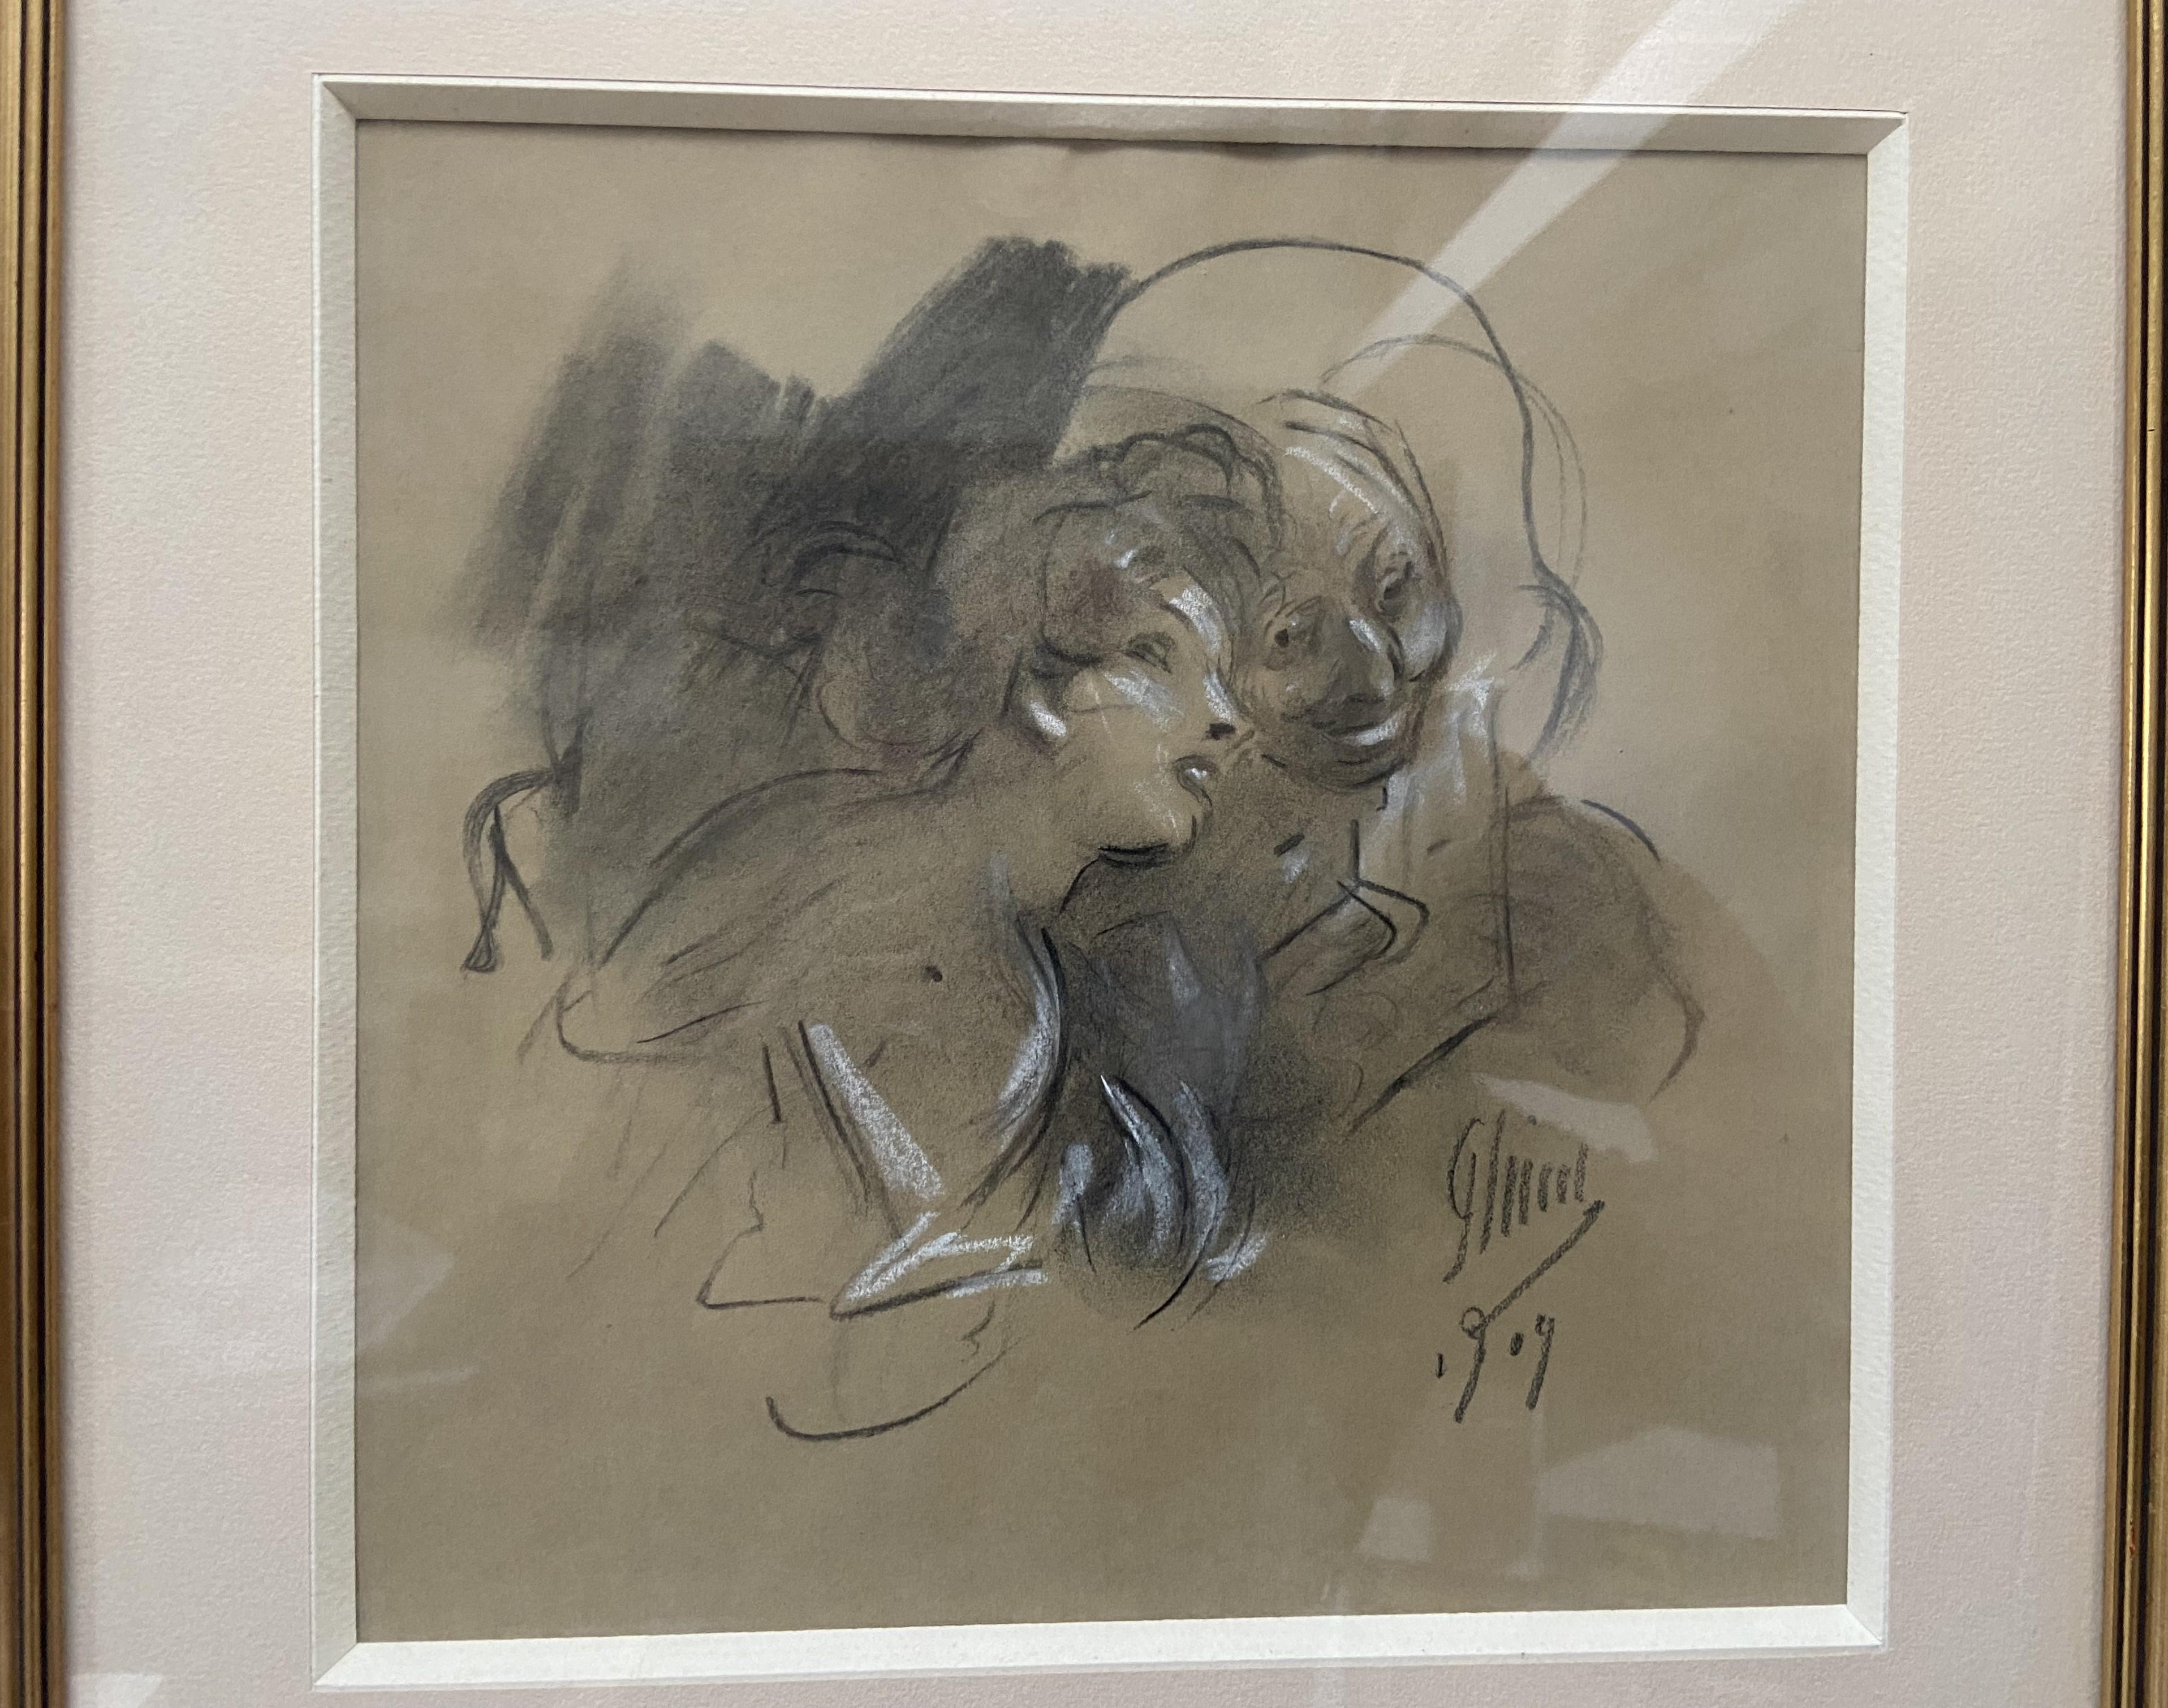 Jules Cheret (1836-1932) 
La Confidence 1909
signé et daté en bas à droite
Fusain  et des rehauts de craie blanche
22.7 x 22.7 cm
Encadré sous verre : 33,8 x 33,8 cm

Une autre œuvre très représentative de l'art de Jules Chéret, pleine de